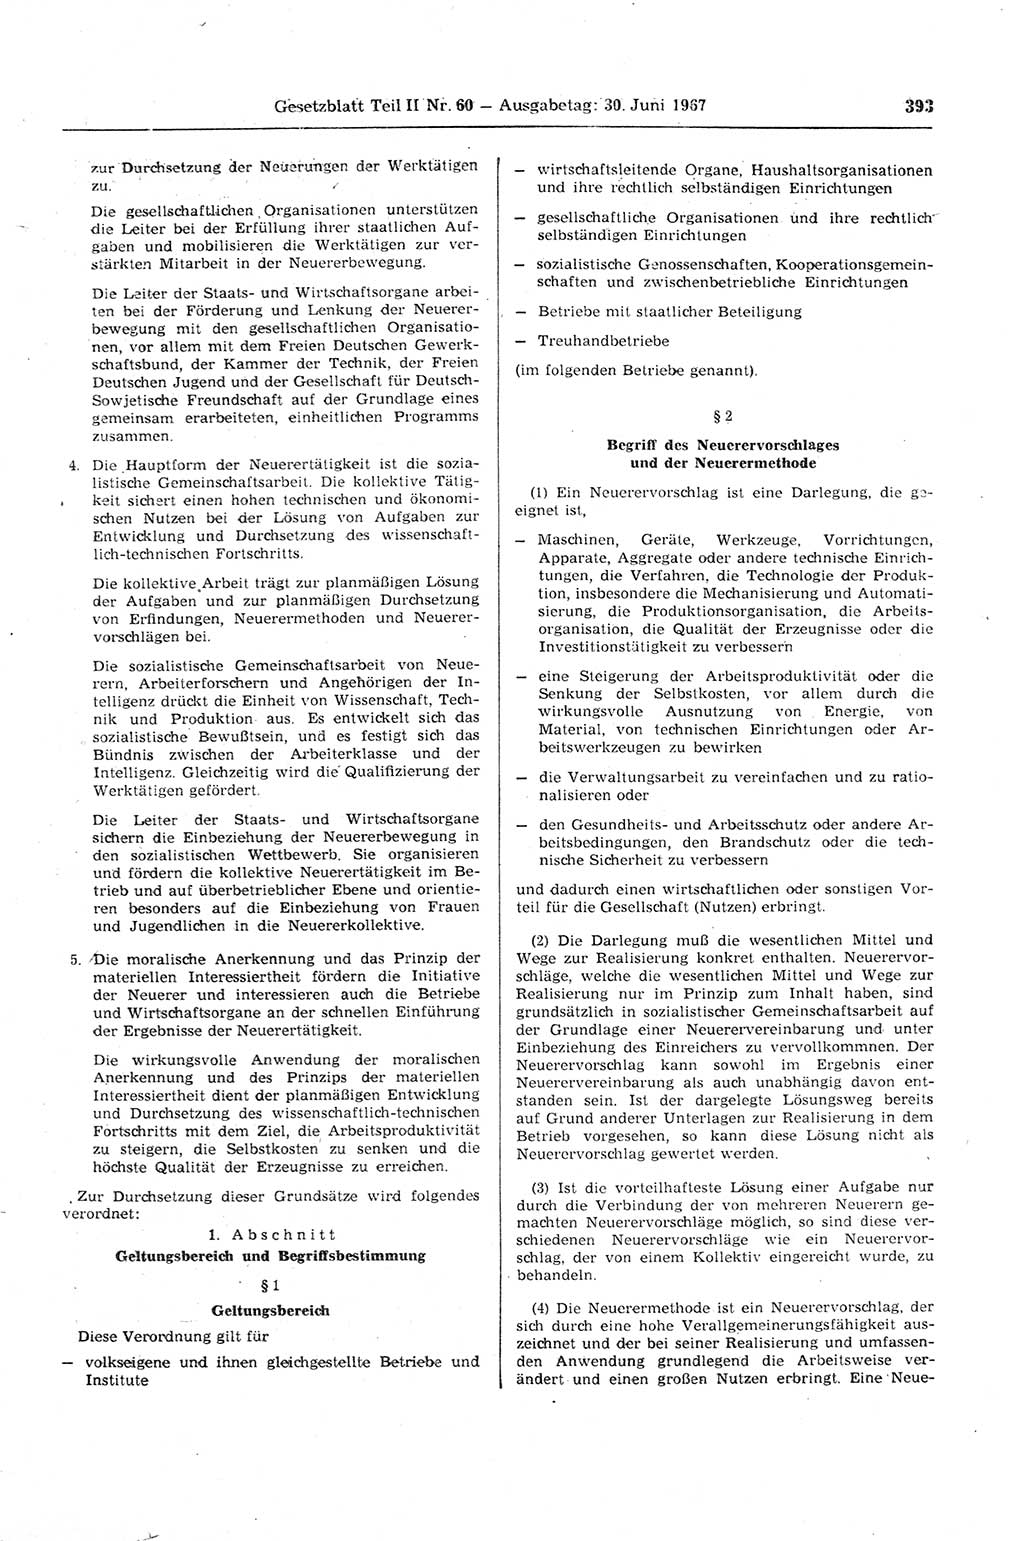 Gesetzblatt (GBl.) der Deutschen Demokratischen Republik (DDR) Teil ⅠⅠ 1967, Seite 393 (GBl. DDR ⅠⅠ 1967, S. 393)